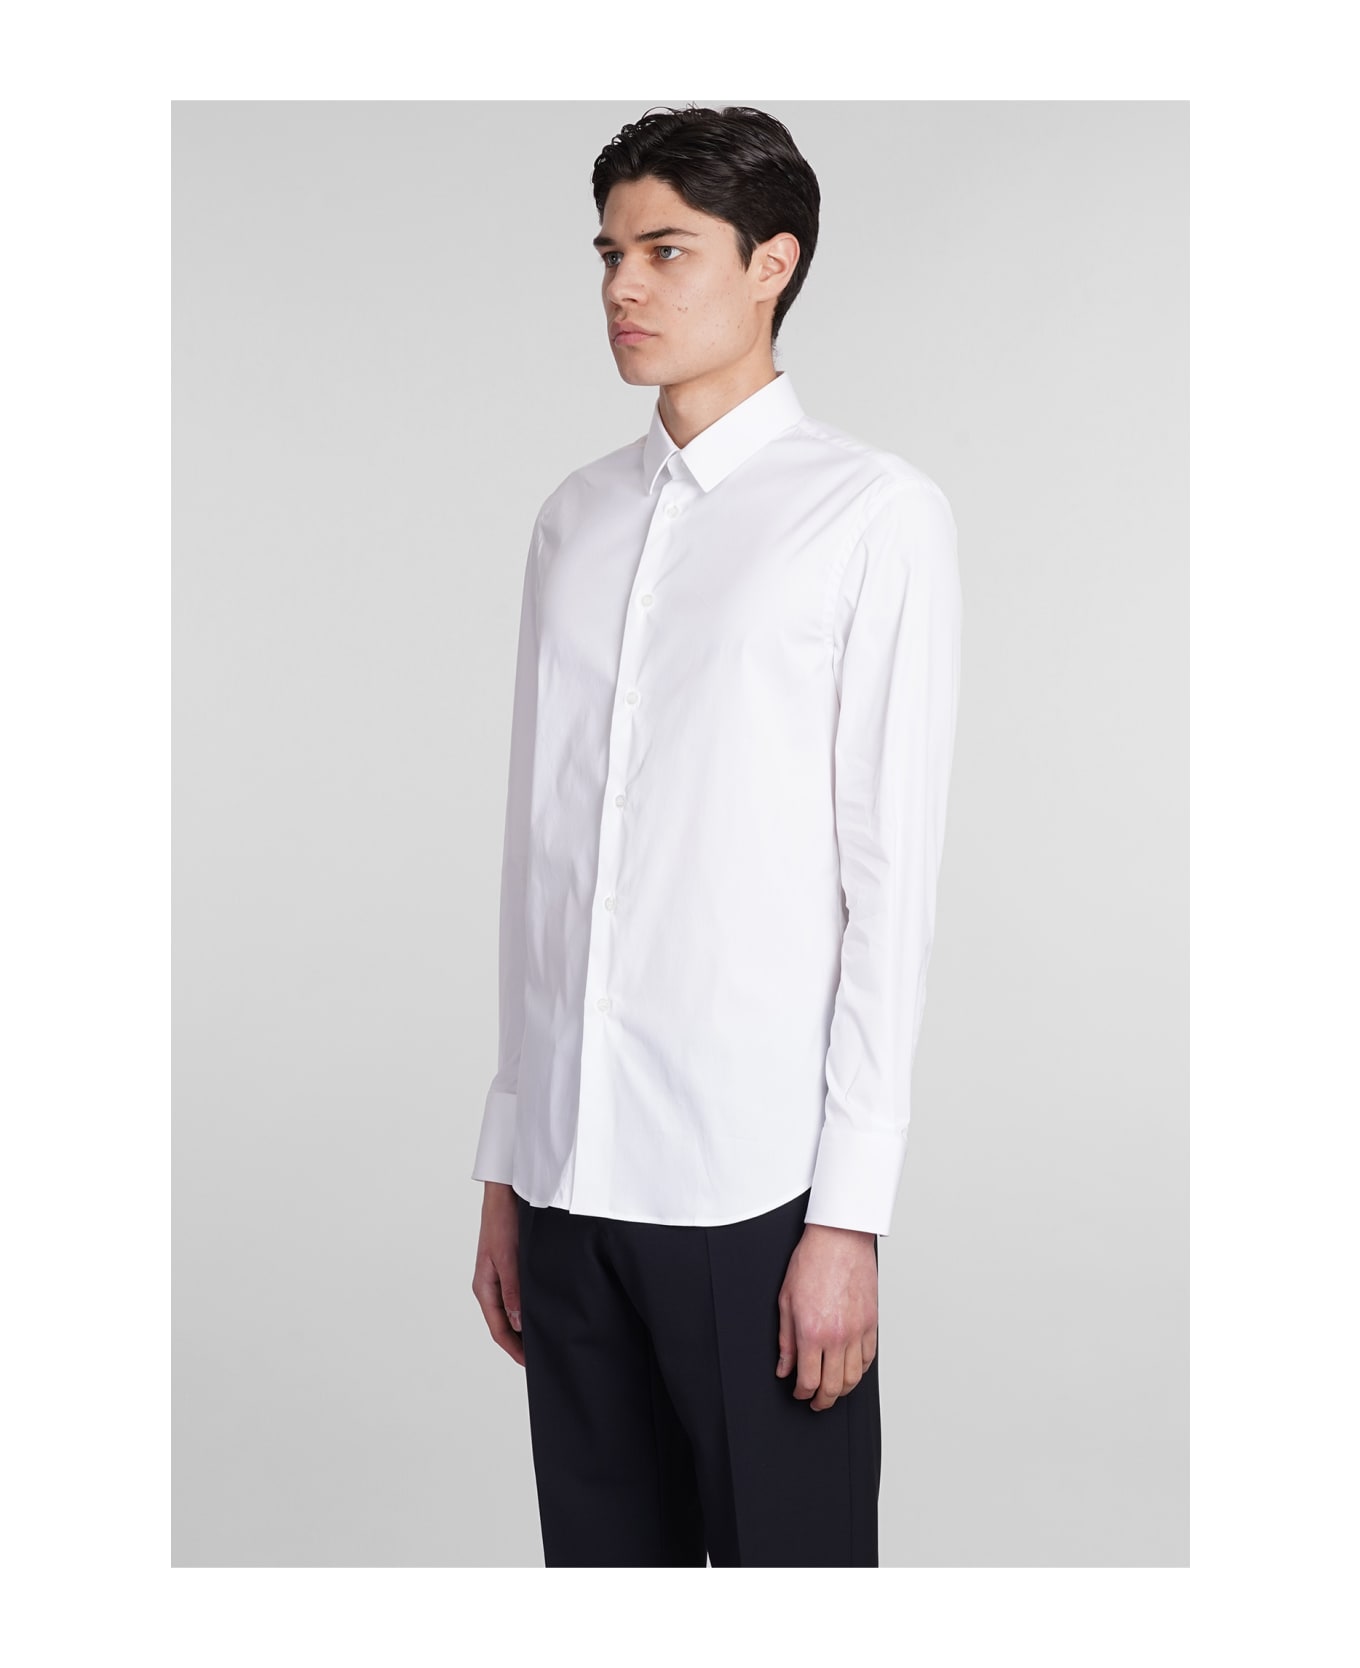 Emporio Armani Shirt In White Cotton - white